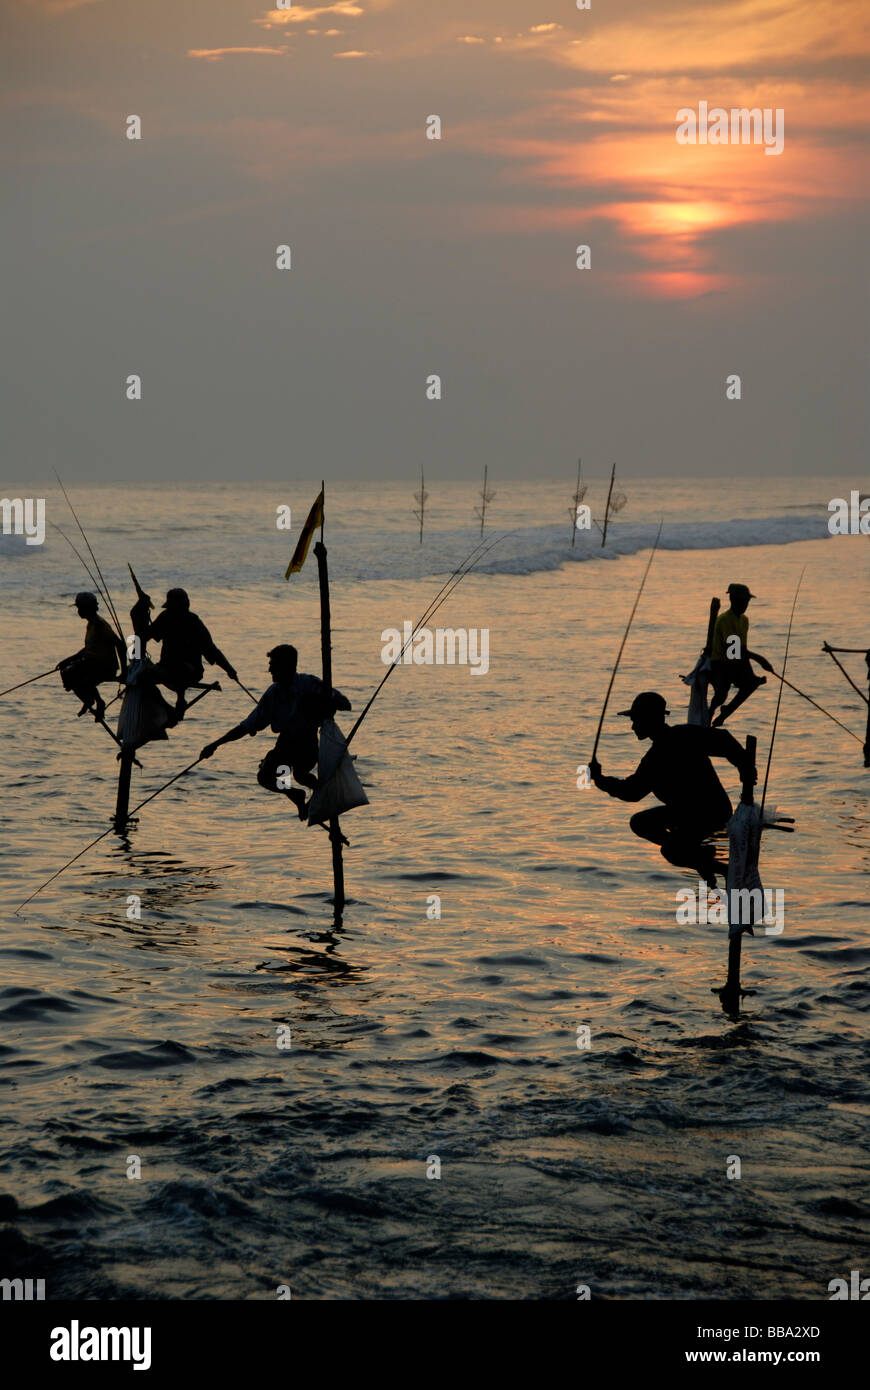 Les pêcheurs sur échasses, coucher du soleil, les pêcheurs sur pilotis de pêche dans les eaux peu profondes, de l'Océan Indien, Ceylan, le Sri Lanka, l'Asie du Sud, Asie Banque D'Images